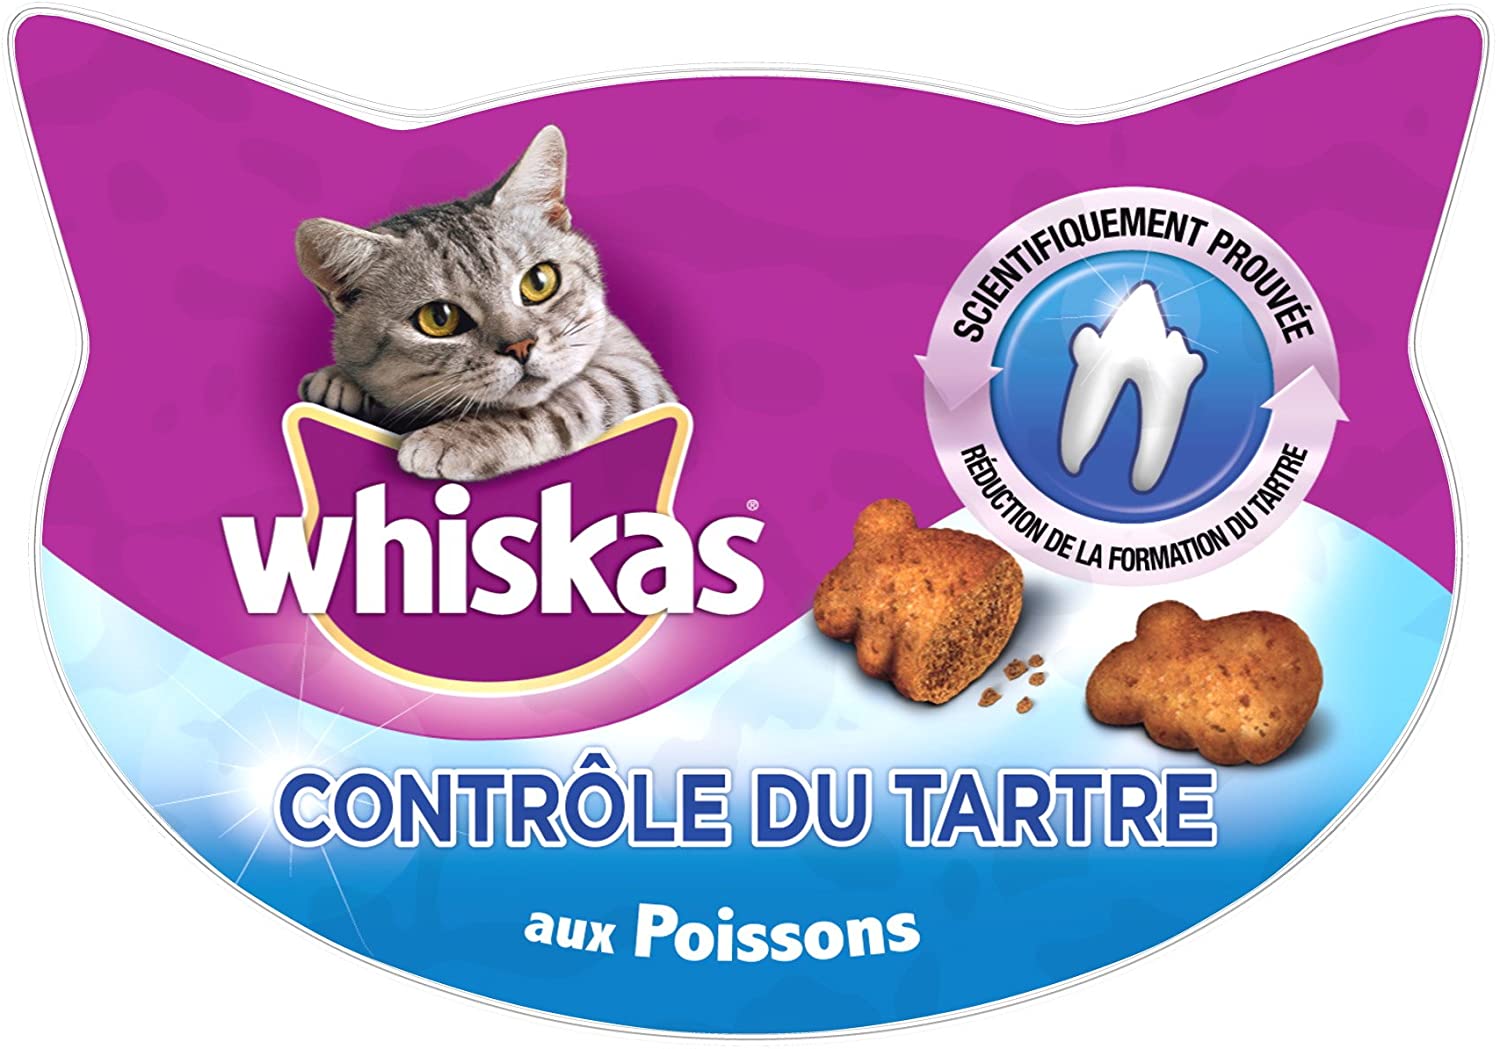  Whiskas Anti-Hairball de 60 g para bolas de pelo de uso diario para gatos (Pack de 8) 